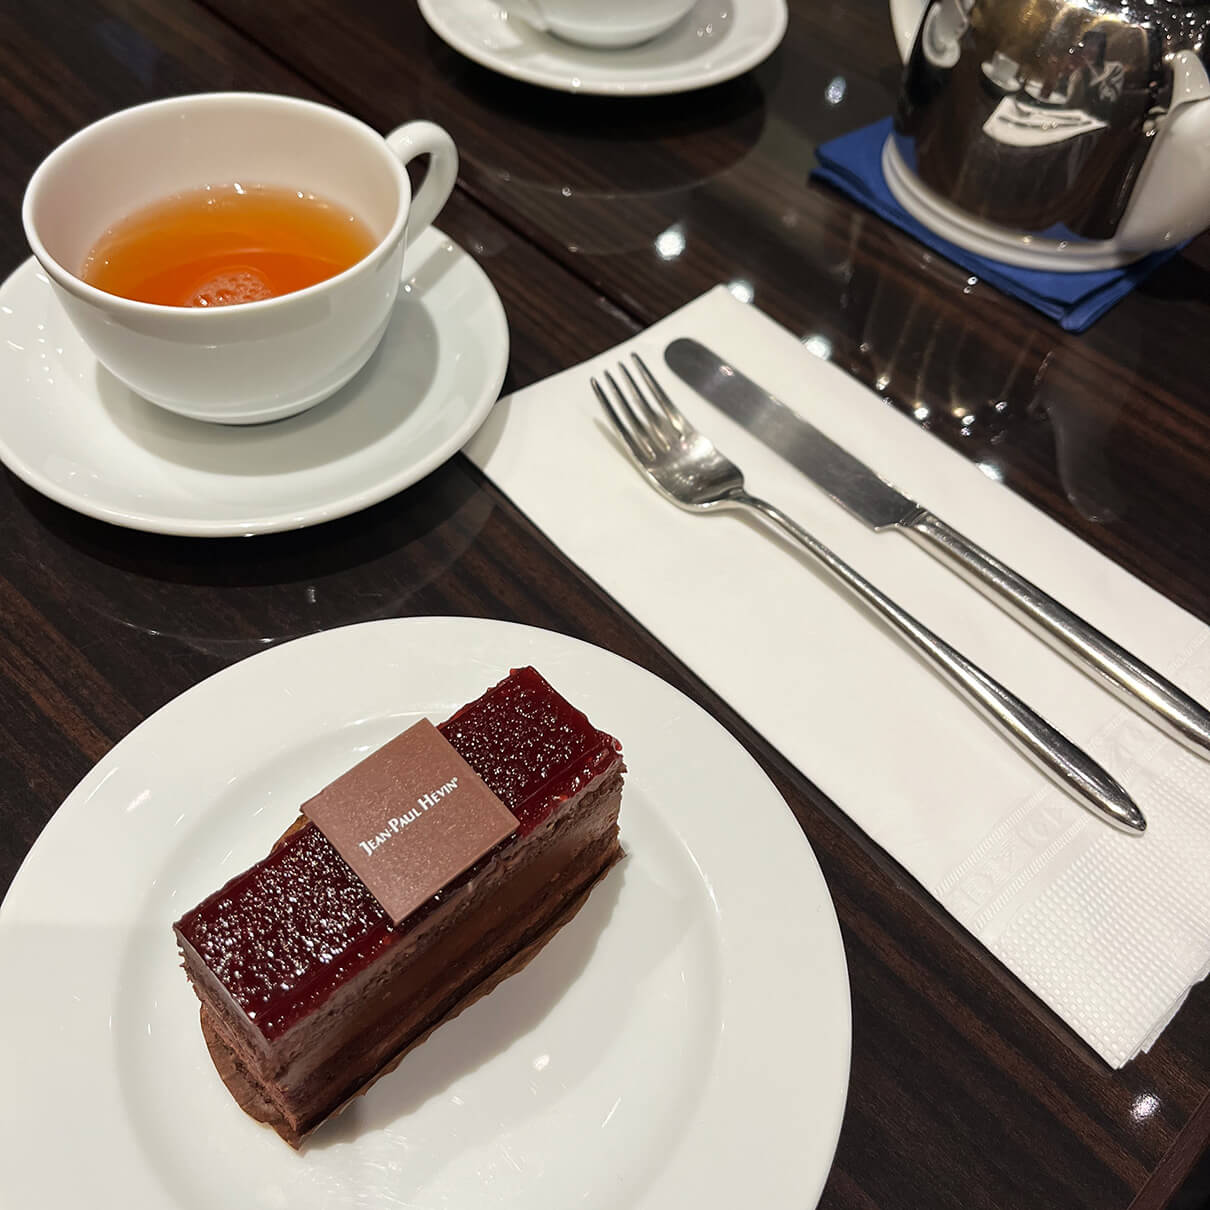 ジャンポール エヴァン(JEAN-PAUL HEVIN)東京ミッドタウン店のケーキと紅茶